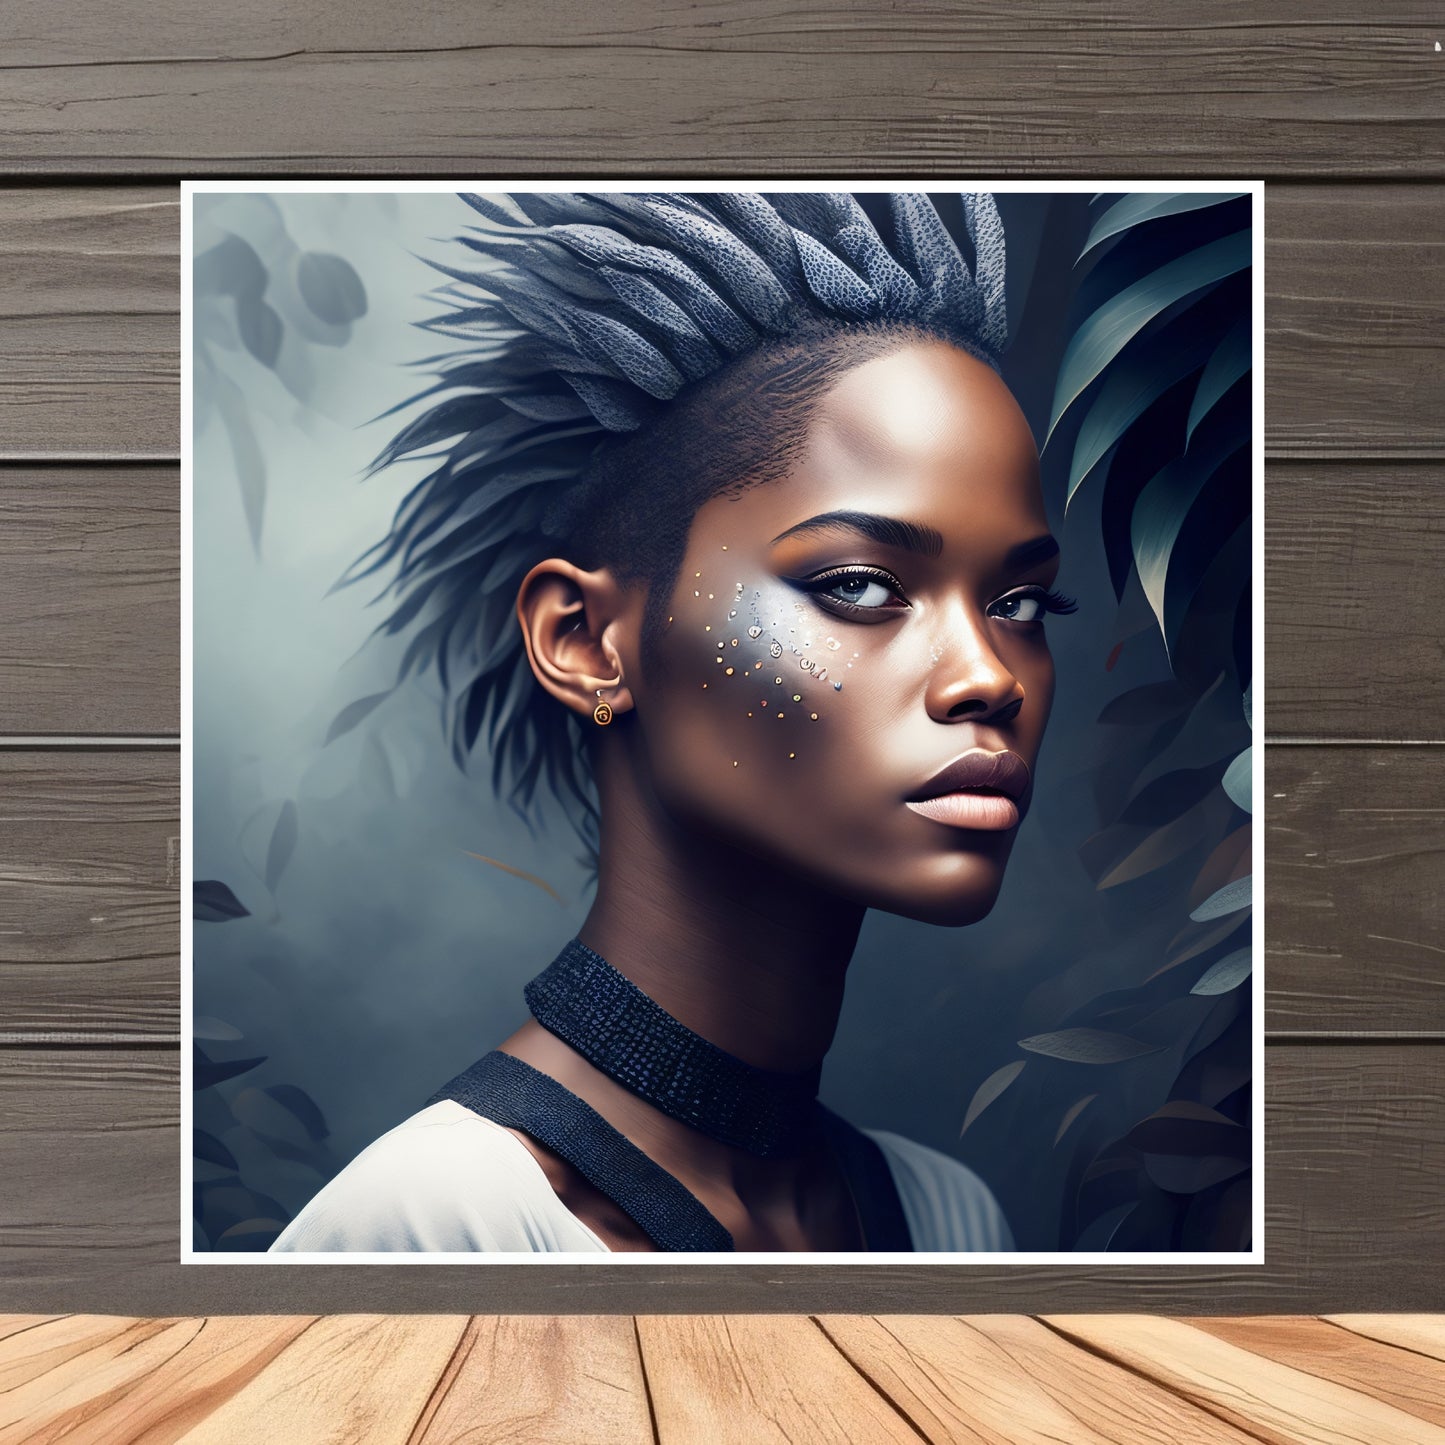 CyberPunk Black Girl Portrait Art Design sur papier mat premium Utilisation personnelle ou professionnelle Décoration spéciale Grande résolution 3